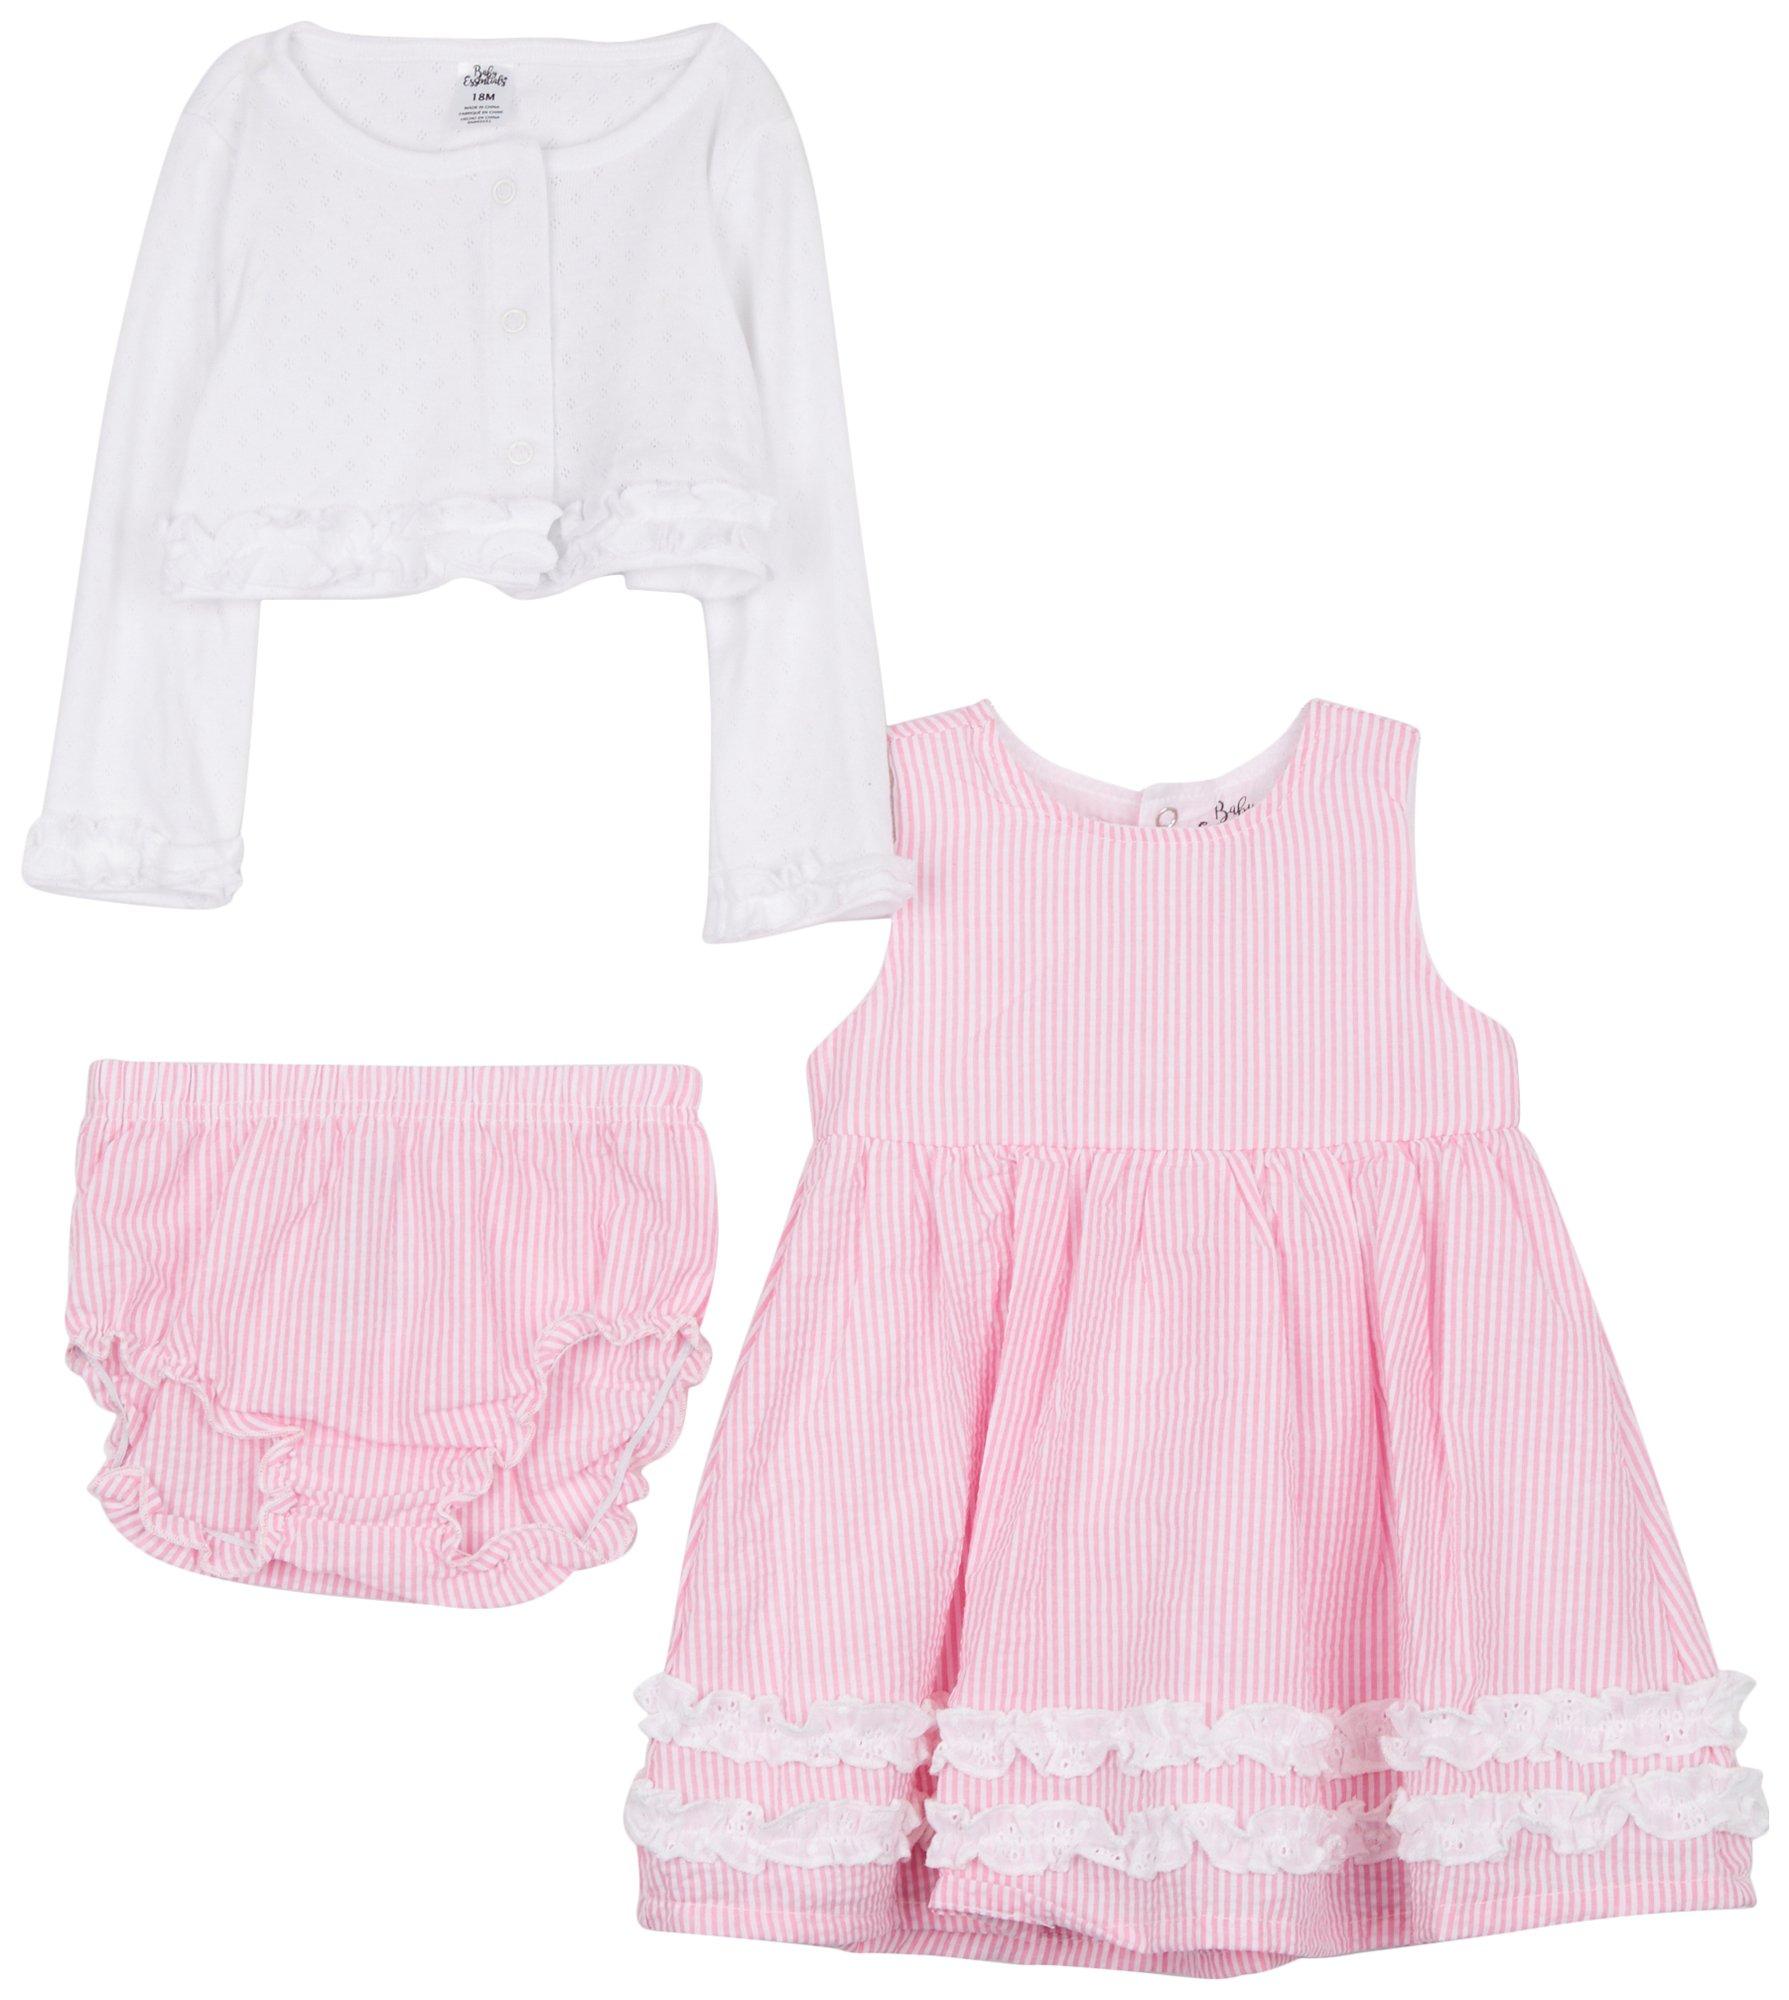 Baby Essentials Baby Girls 3-pc. Pink Stripe Dress Set